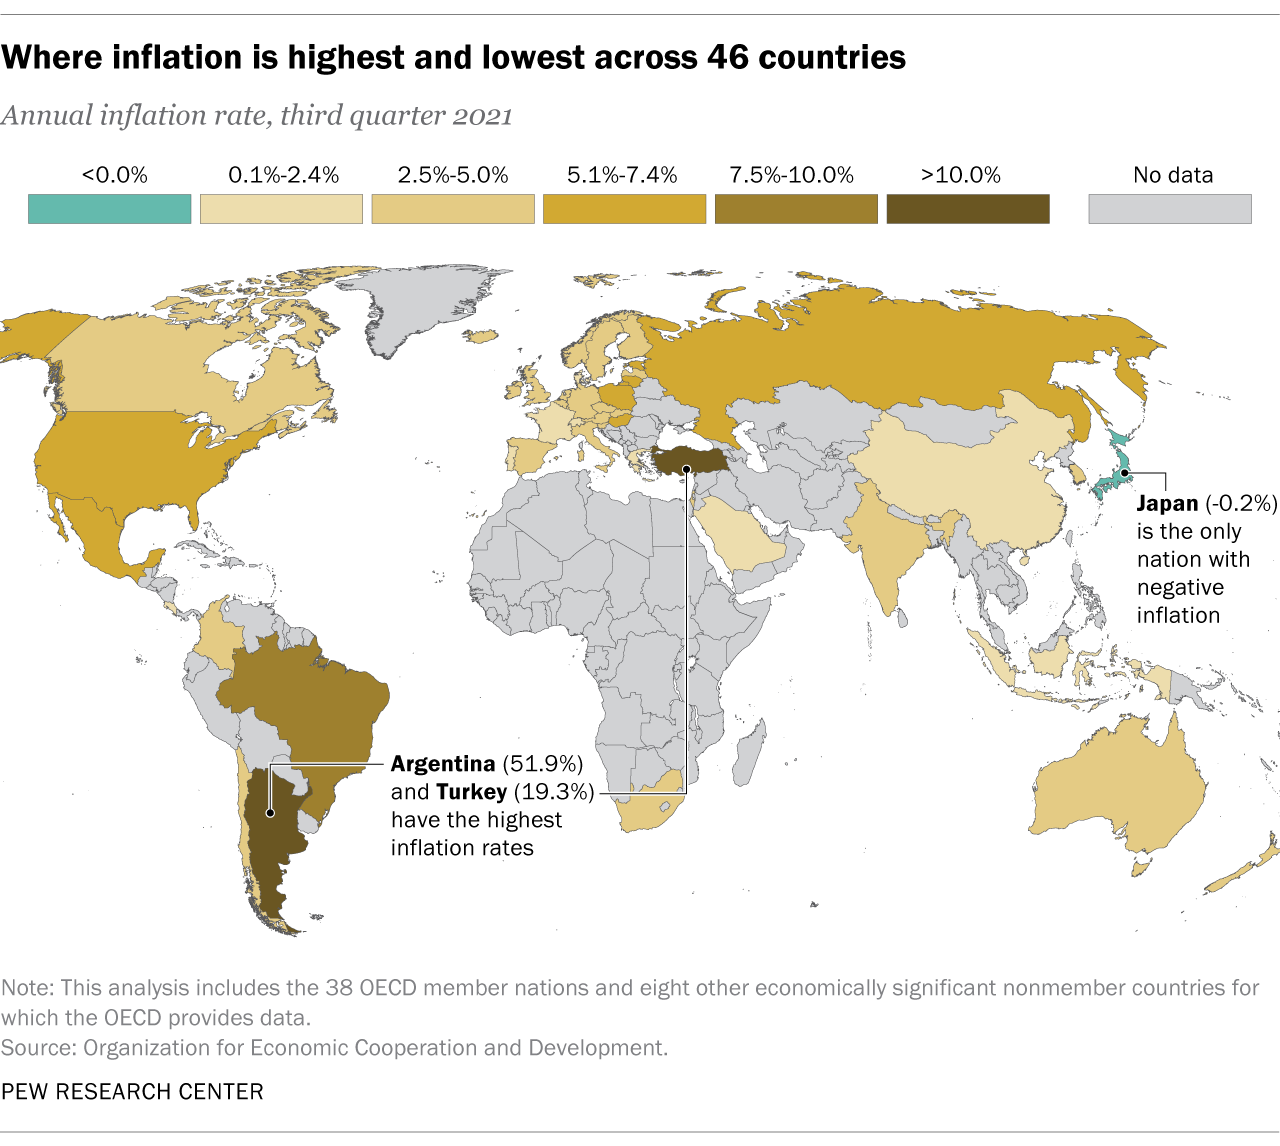  en karta som visar var inflationen är högst och lägst i 46 länder 